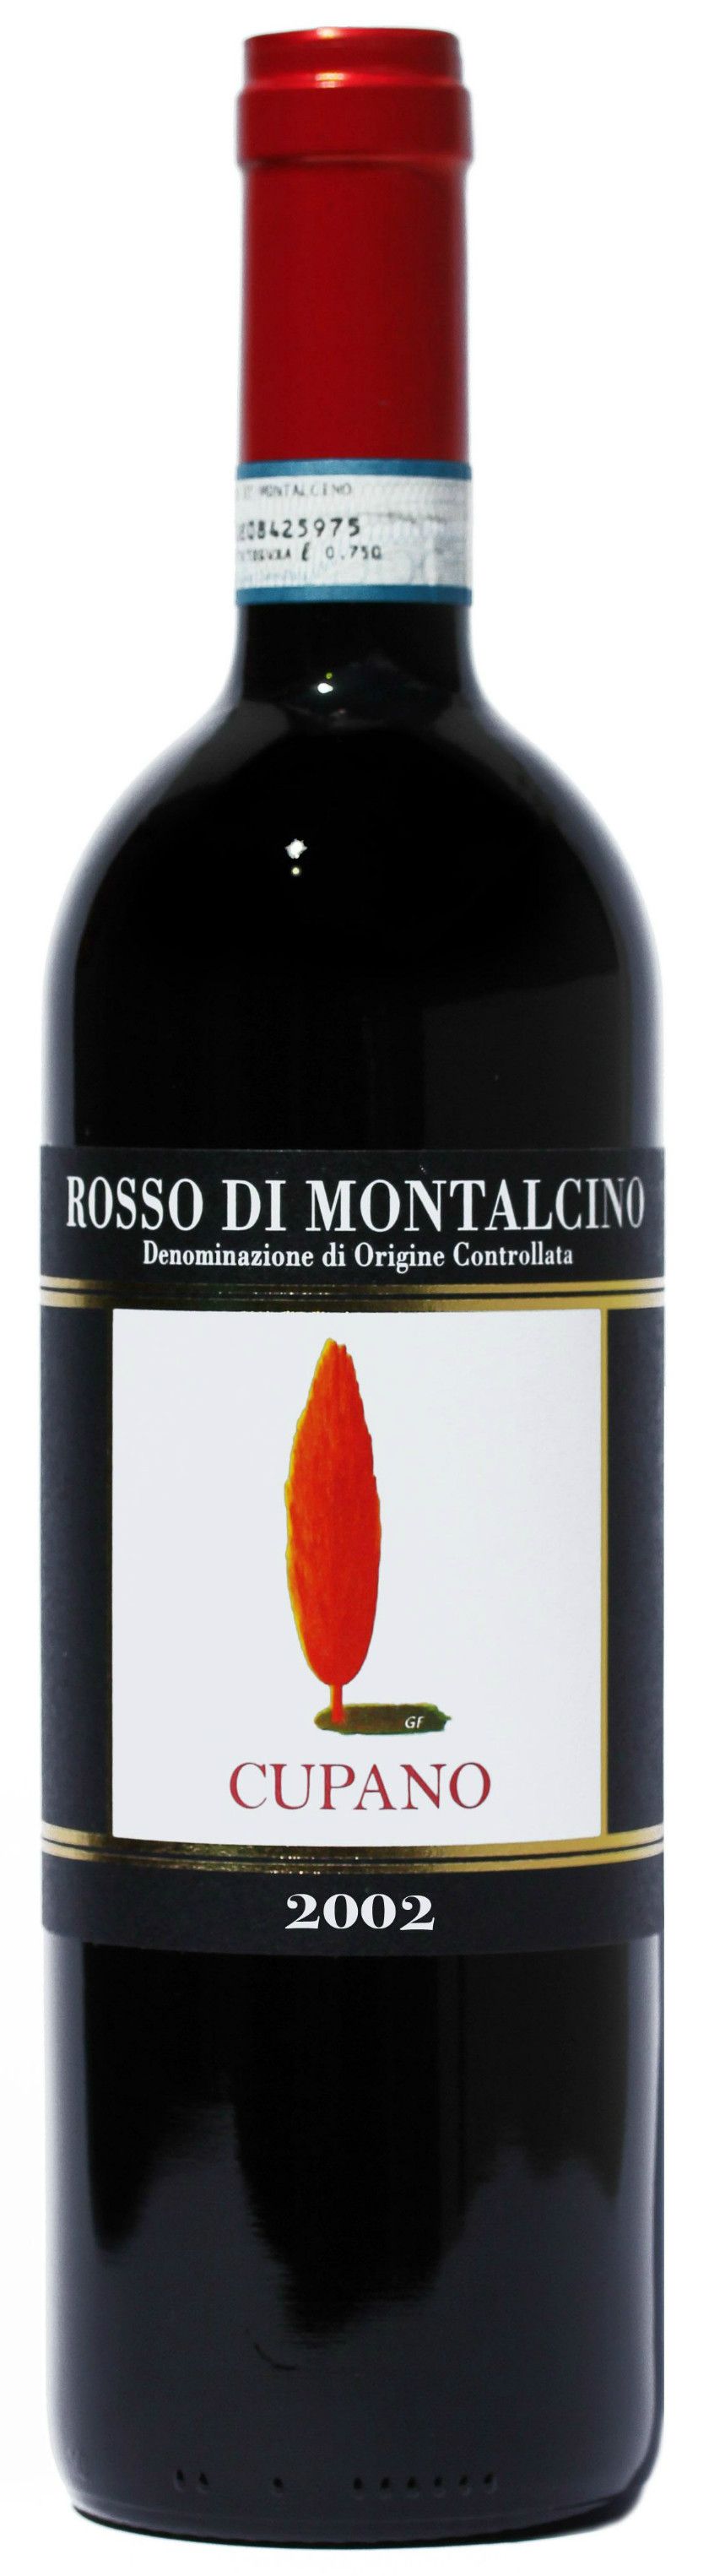 Cupano, Rosso Di Montalcino, 2002